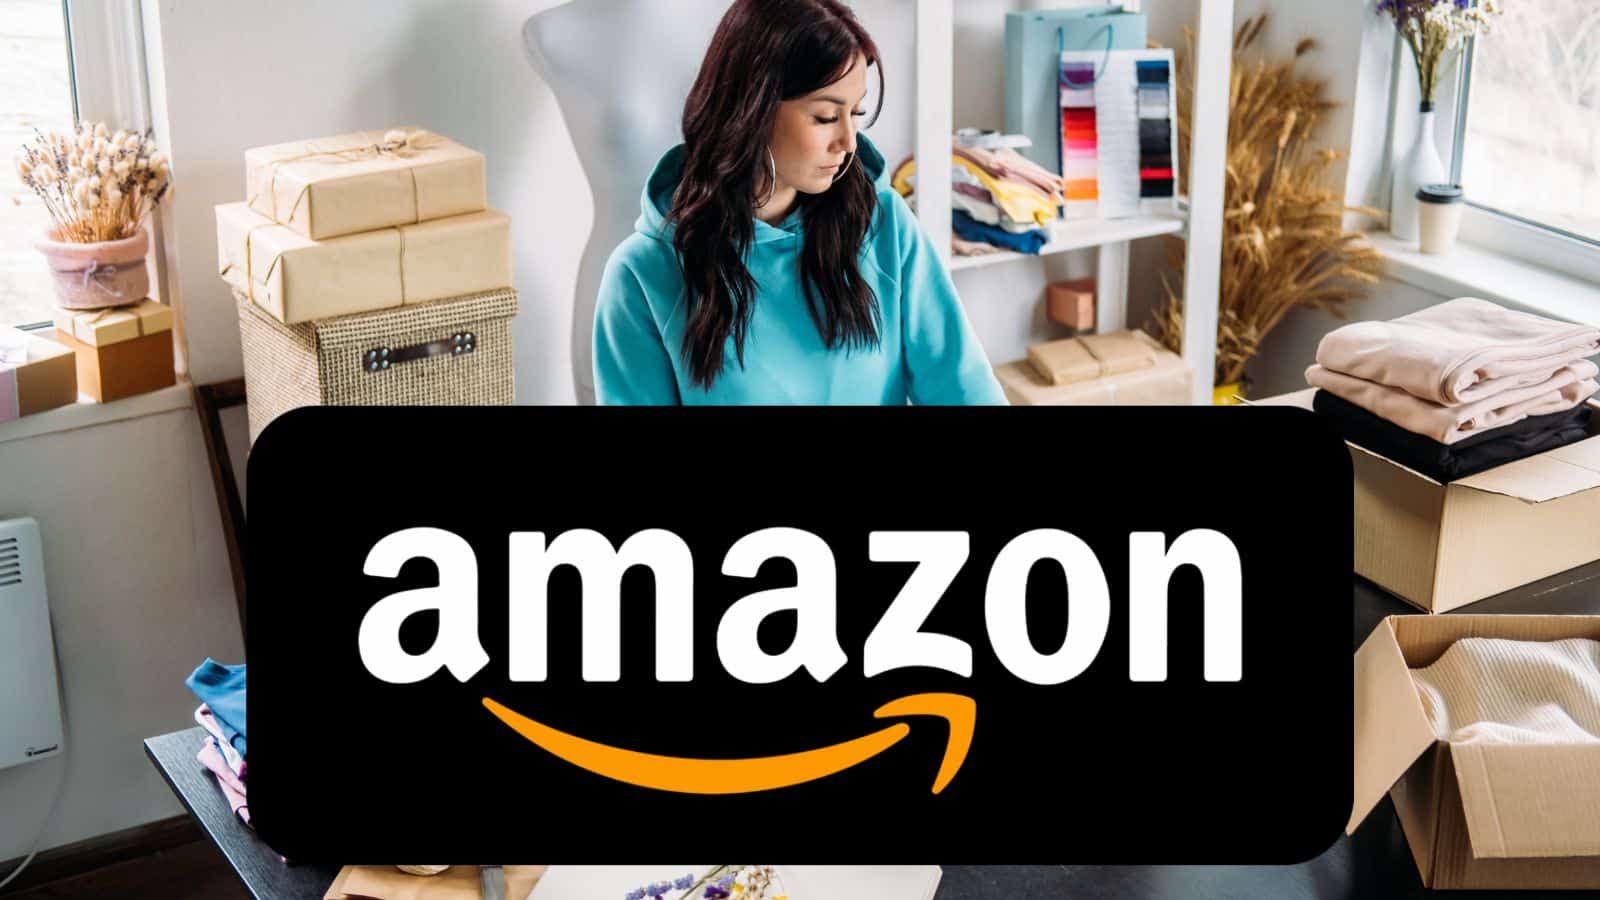 Amazon ASSURDA: lista SEGRETA di offerte al 70% e smartphone gratis